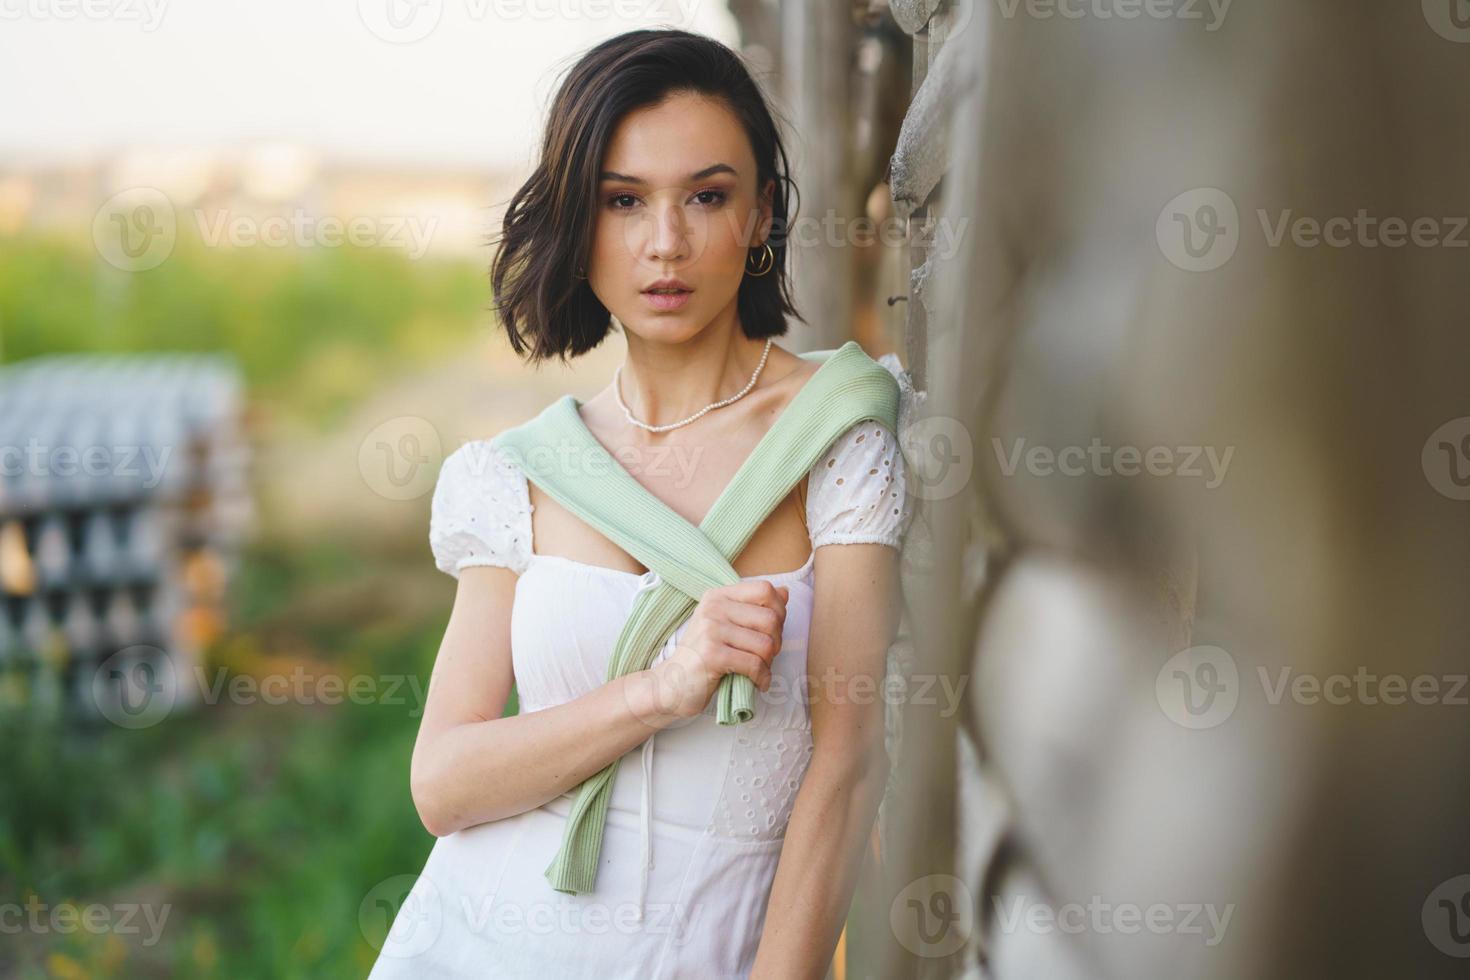 mujer asiática, posando cerca de un secadero de tabaco, con un vestido blanco y botas de agua verdes. foto